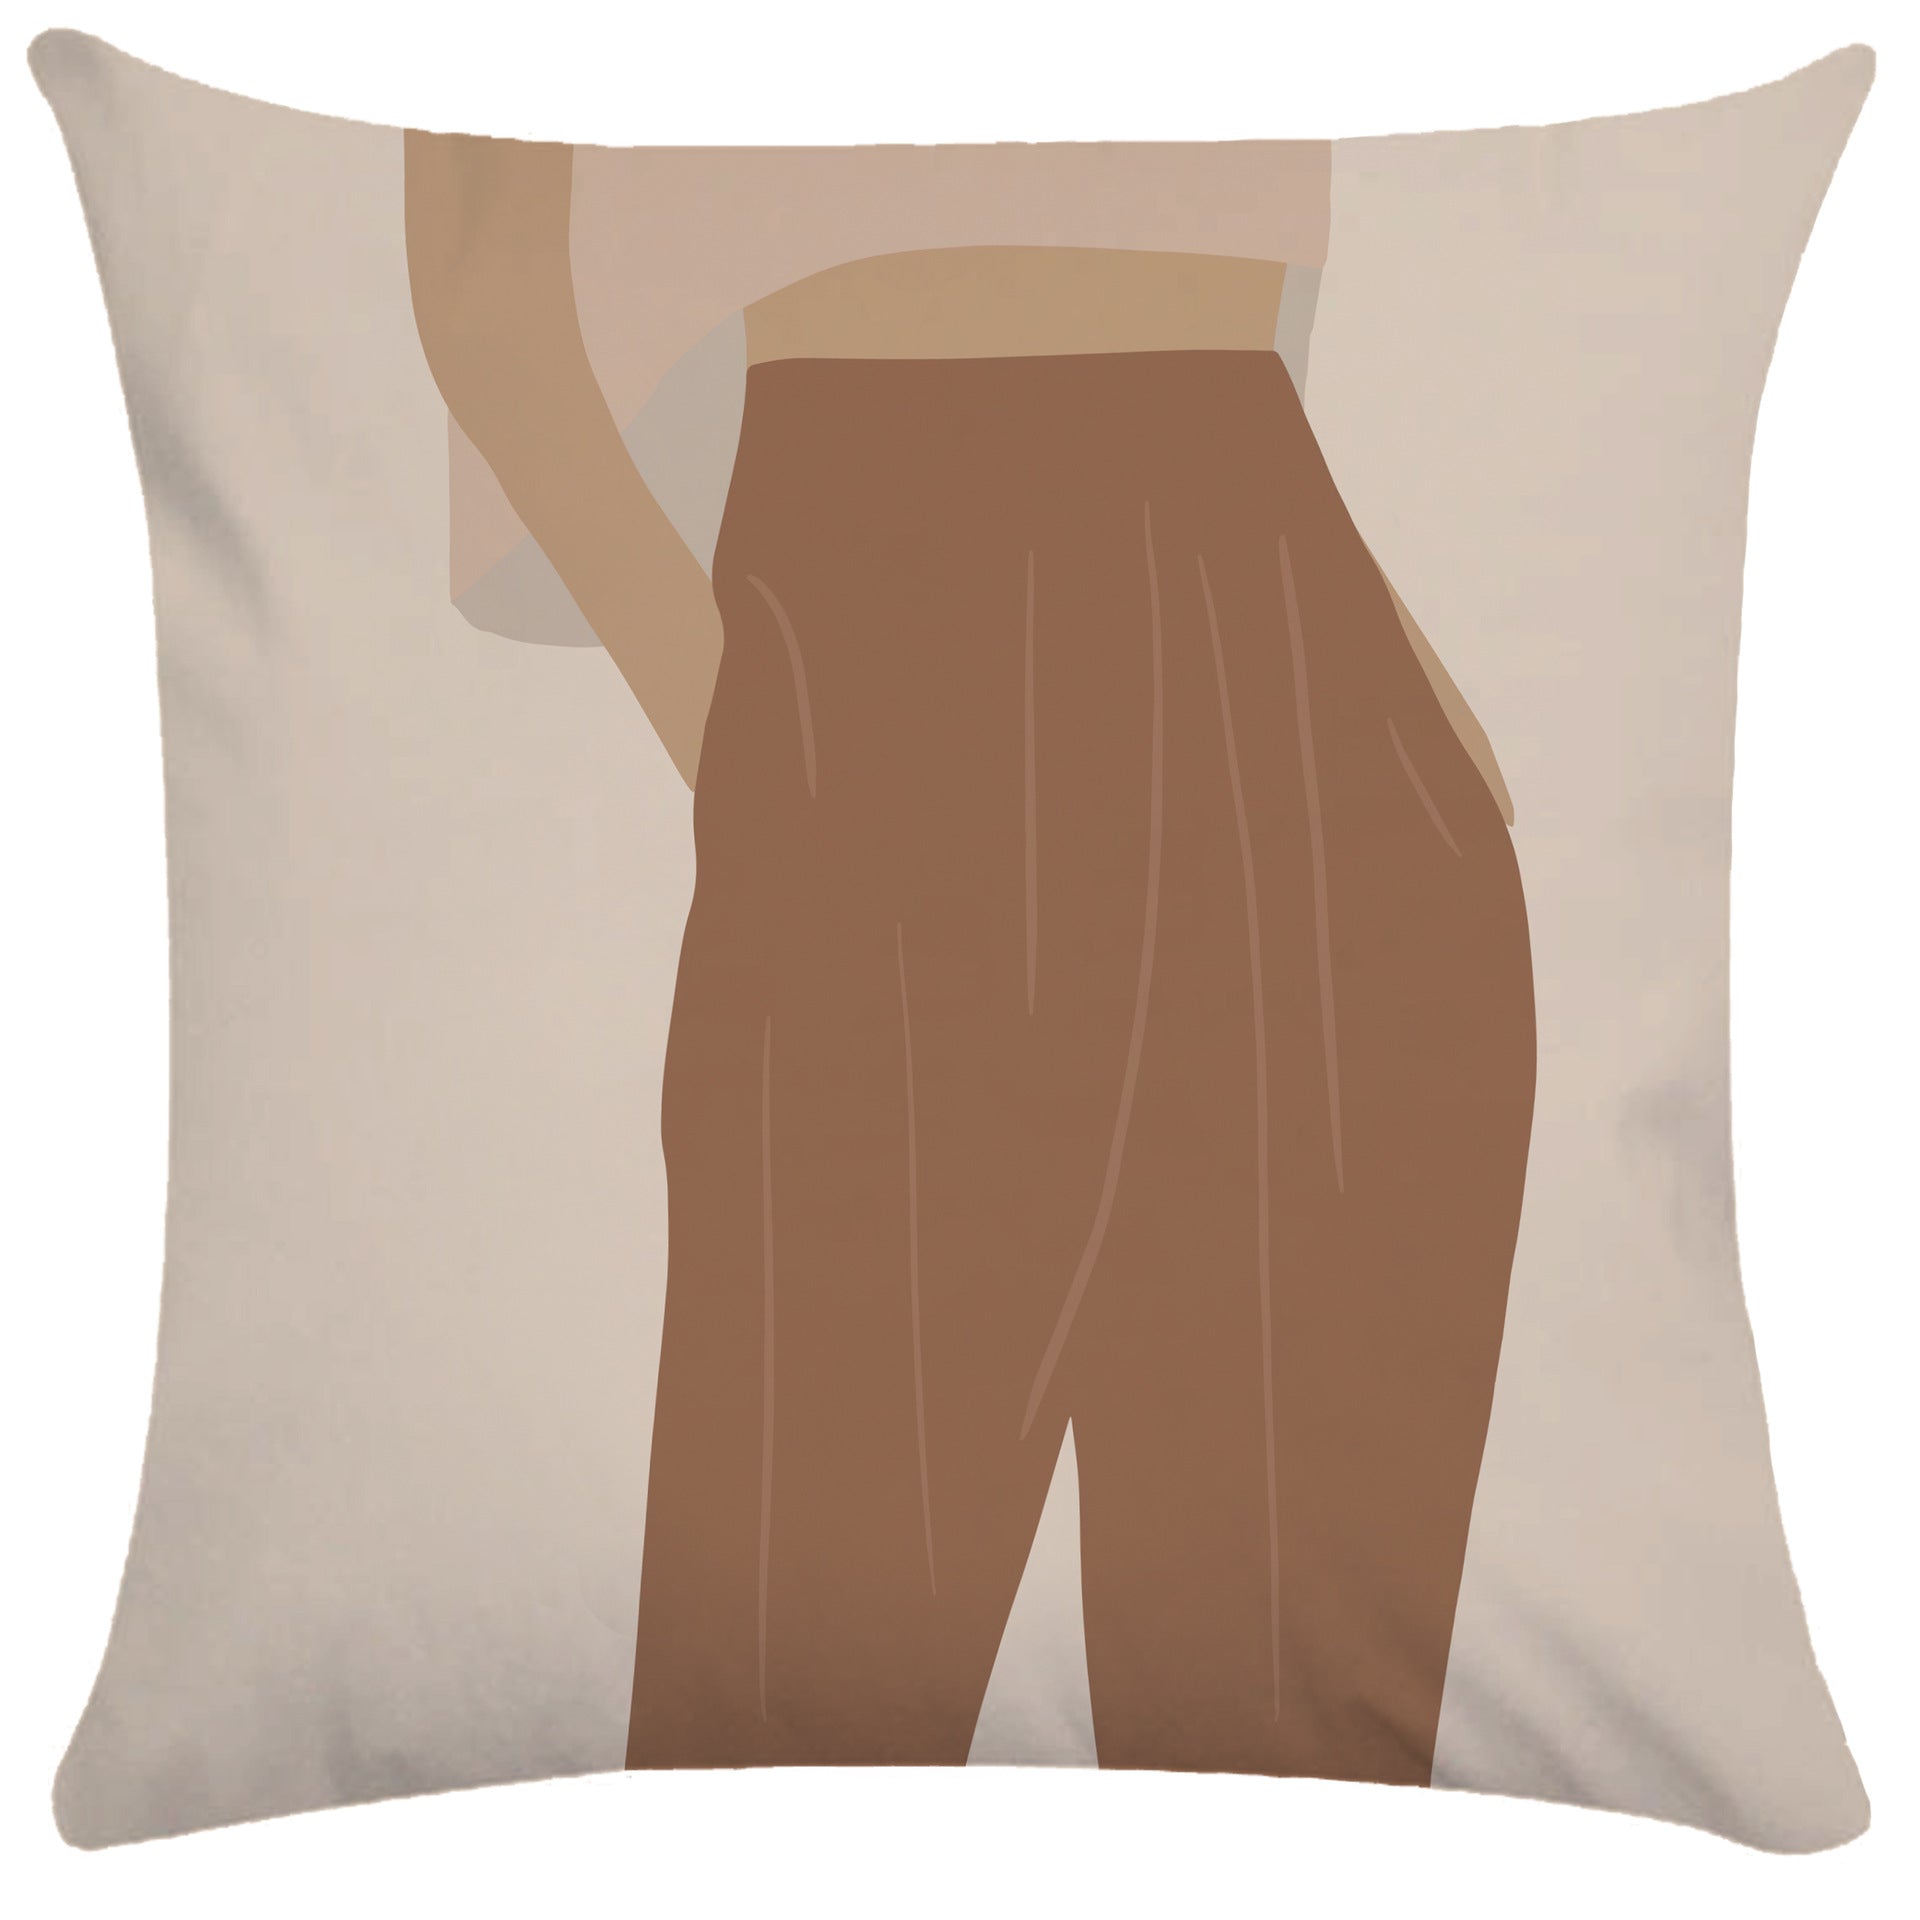 Abstract pillowcase